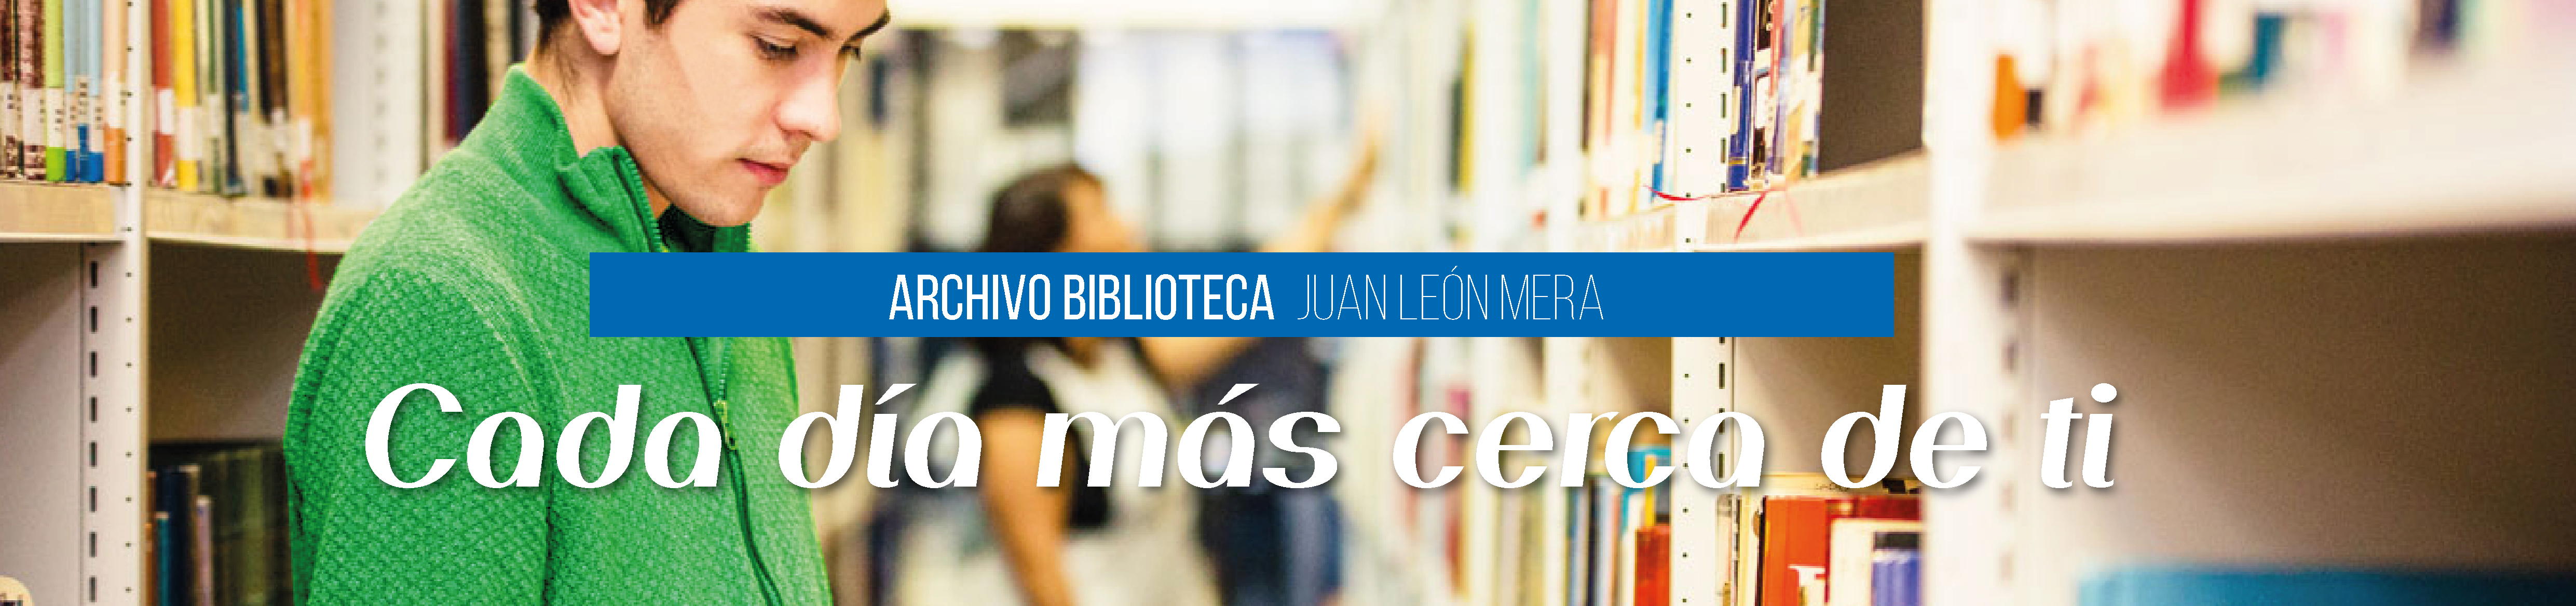 Web BibliotecaMODOK 03